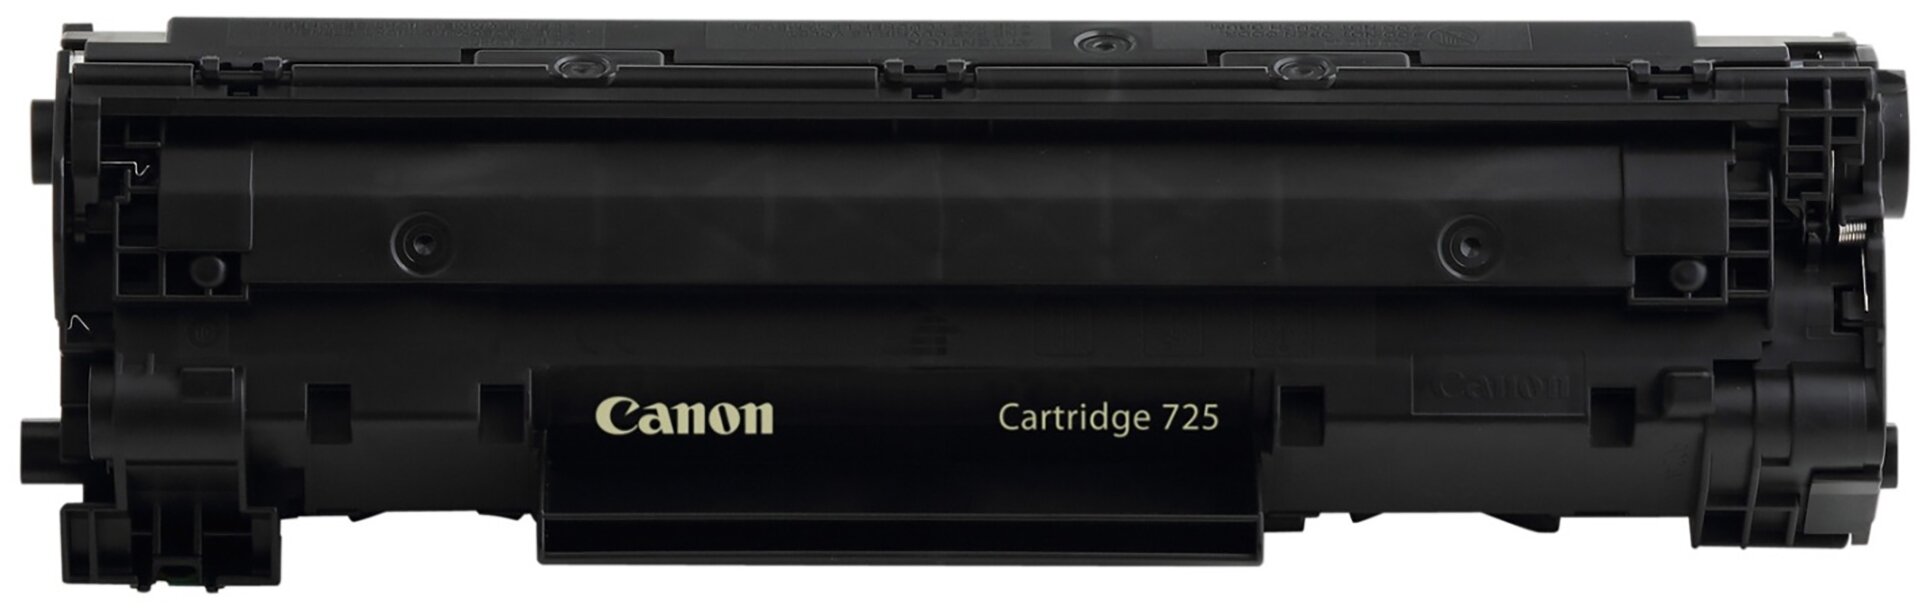 Картридж для лазерного принтера Canon - фото №4